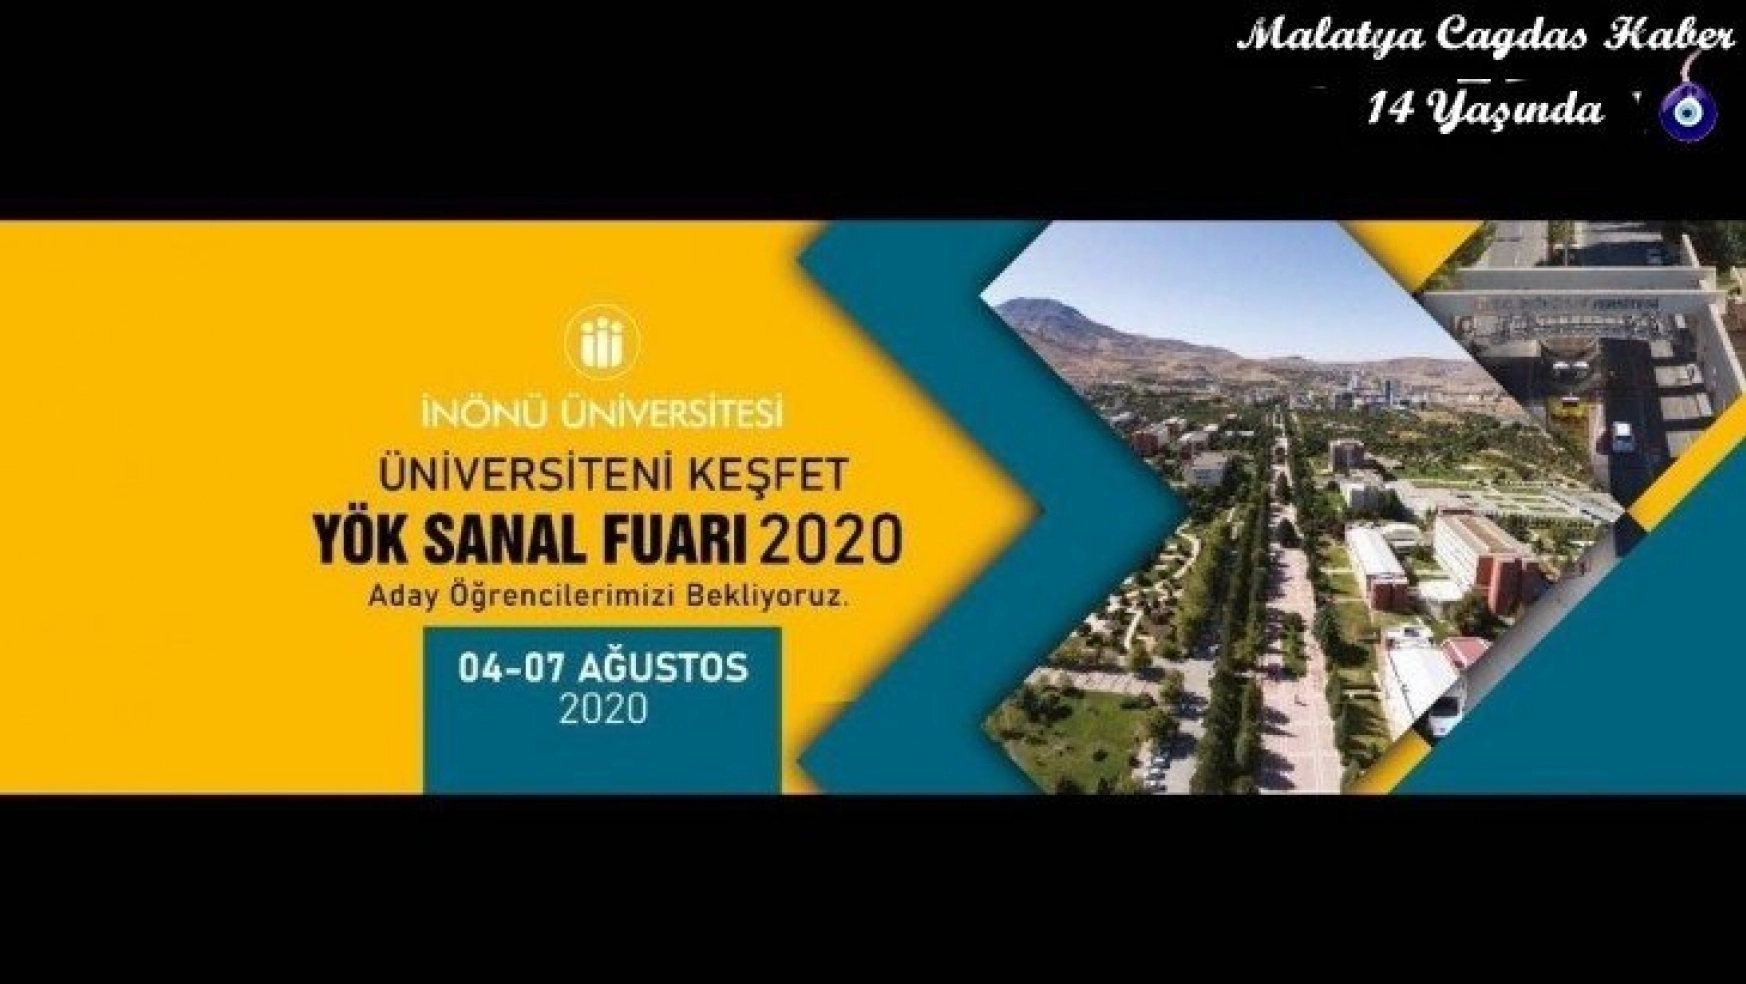 İnönü Üniversitesi YÖK Sanal Fuarı'nda olacak